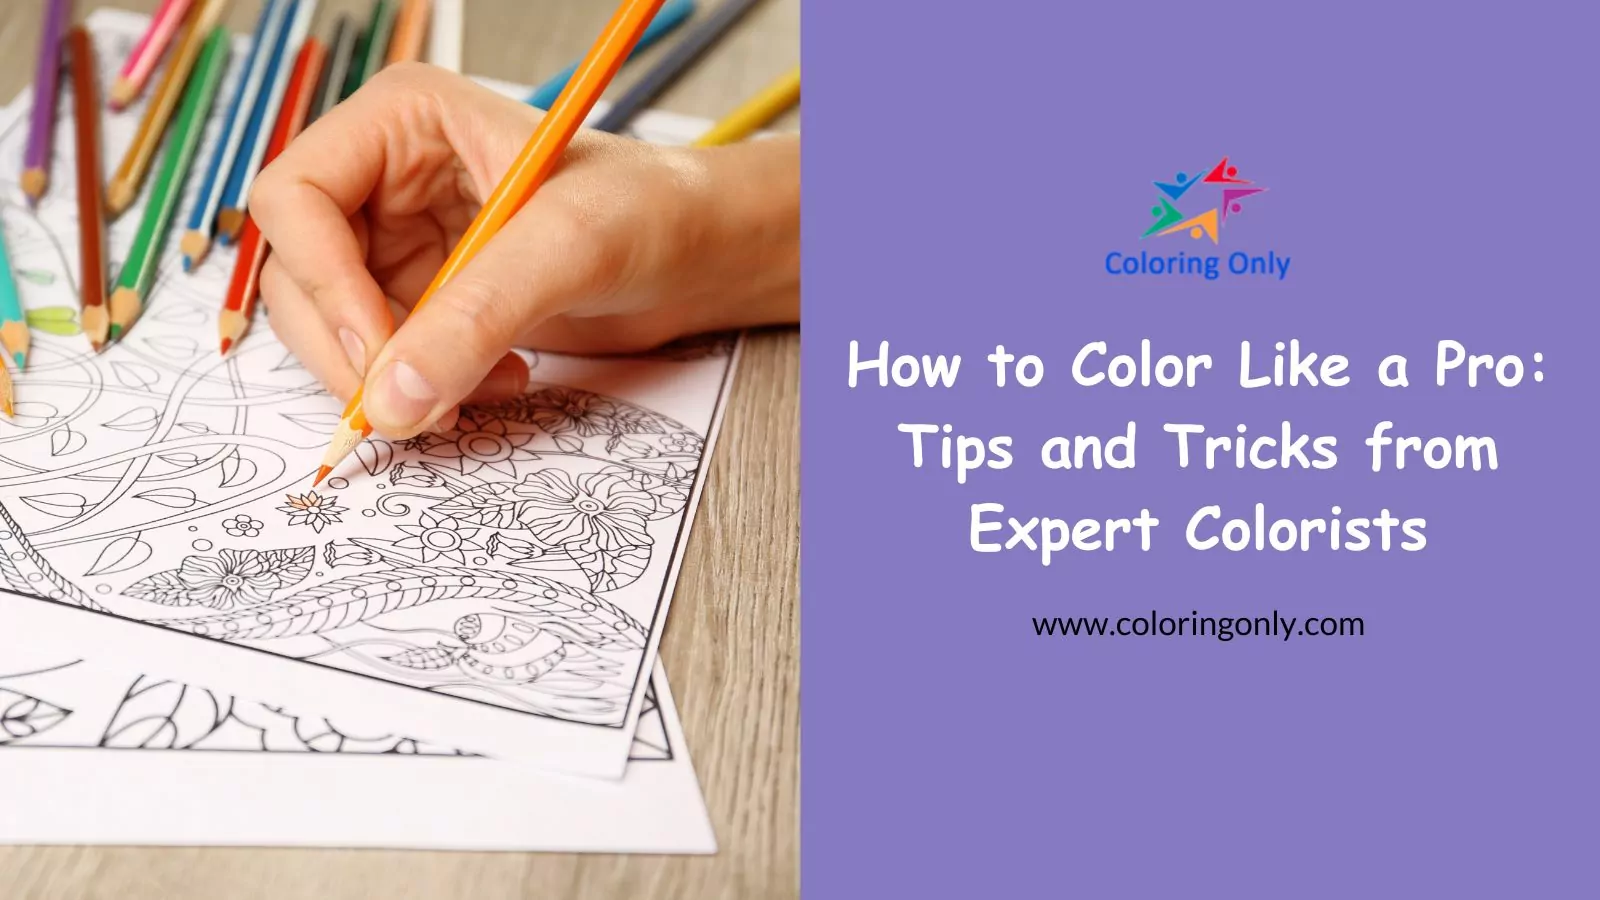 So färben Sie wie ein Profi: Tipps und Tricks von erfahrenen Coloristen